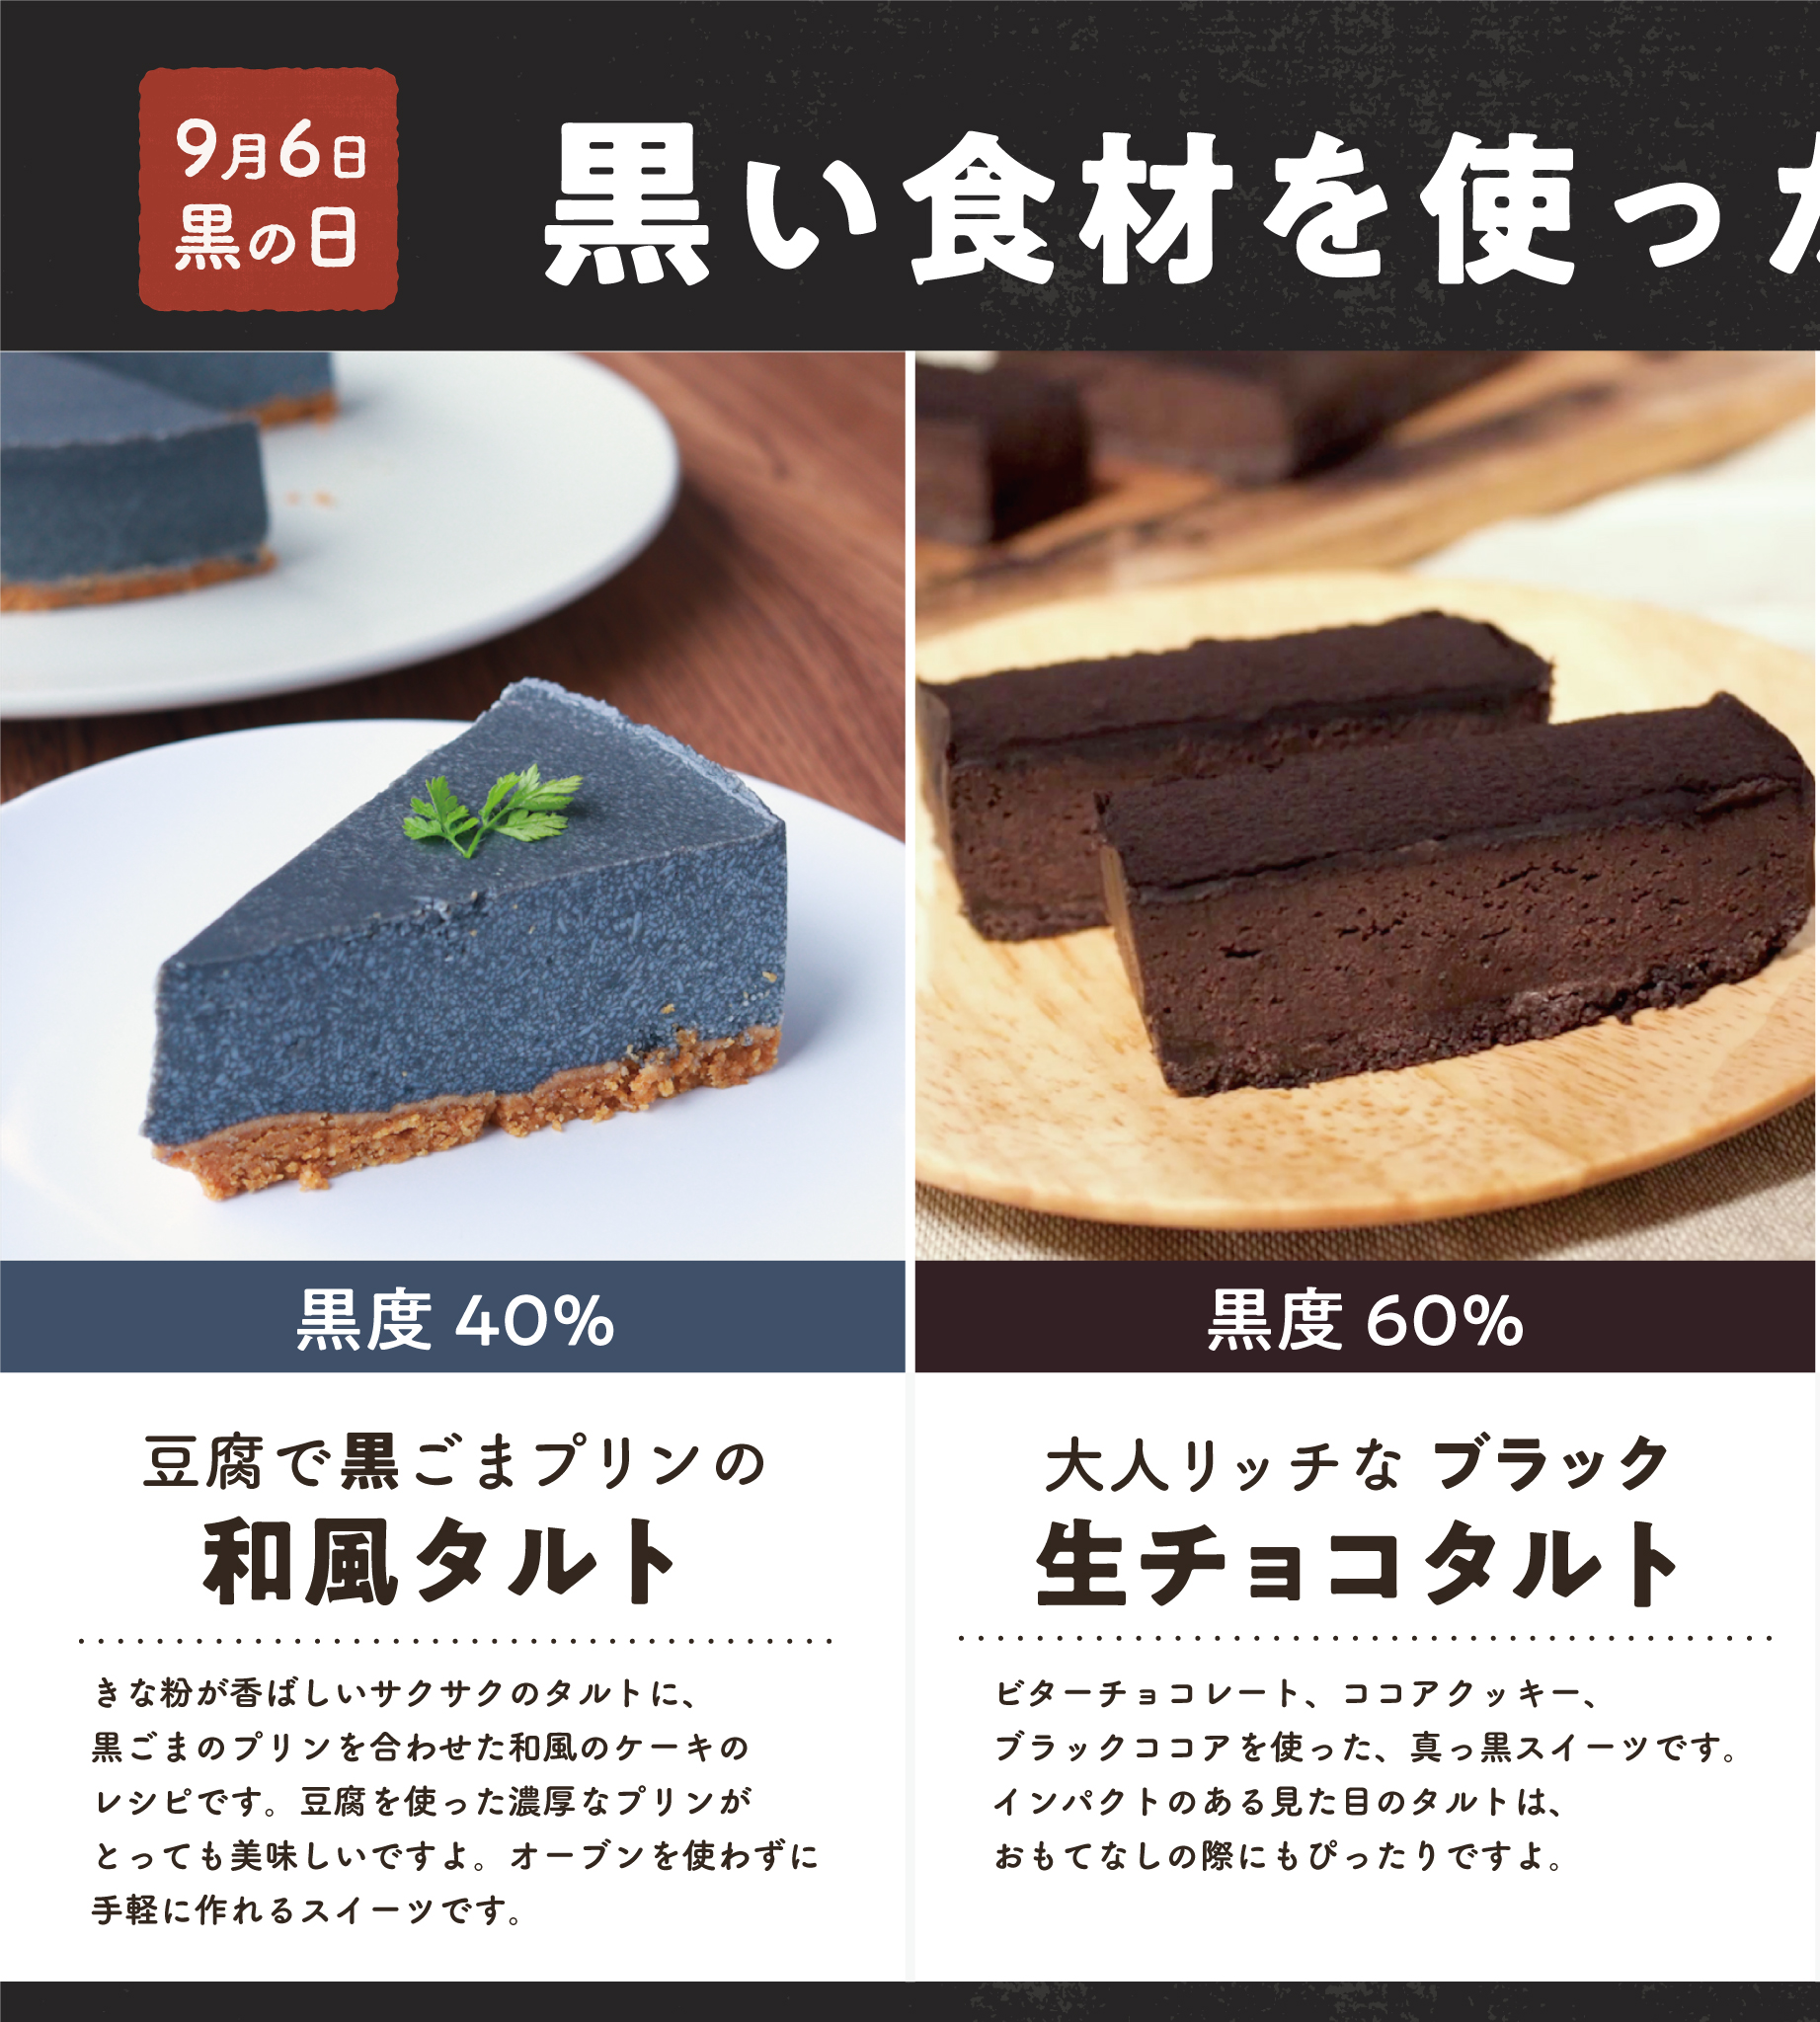 Kurashiru クラシル V Twitter 9月6日9時6分になりました 本日は 黒の日 クラシル から黒い食材を使った 黒レシピをご紹介 左のレシピから黒度がどんどん 上がっていきますよ 皆さんはどれを食べたいですか ぜひリプライで教えてくださいね Https